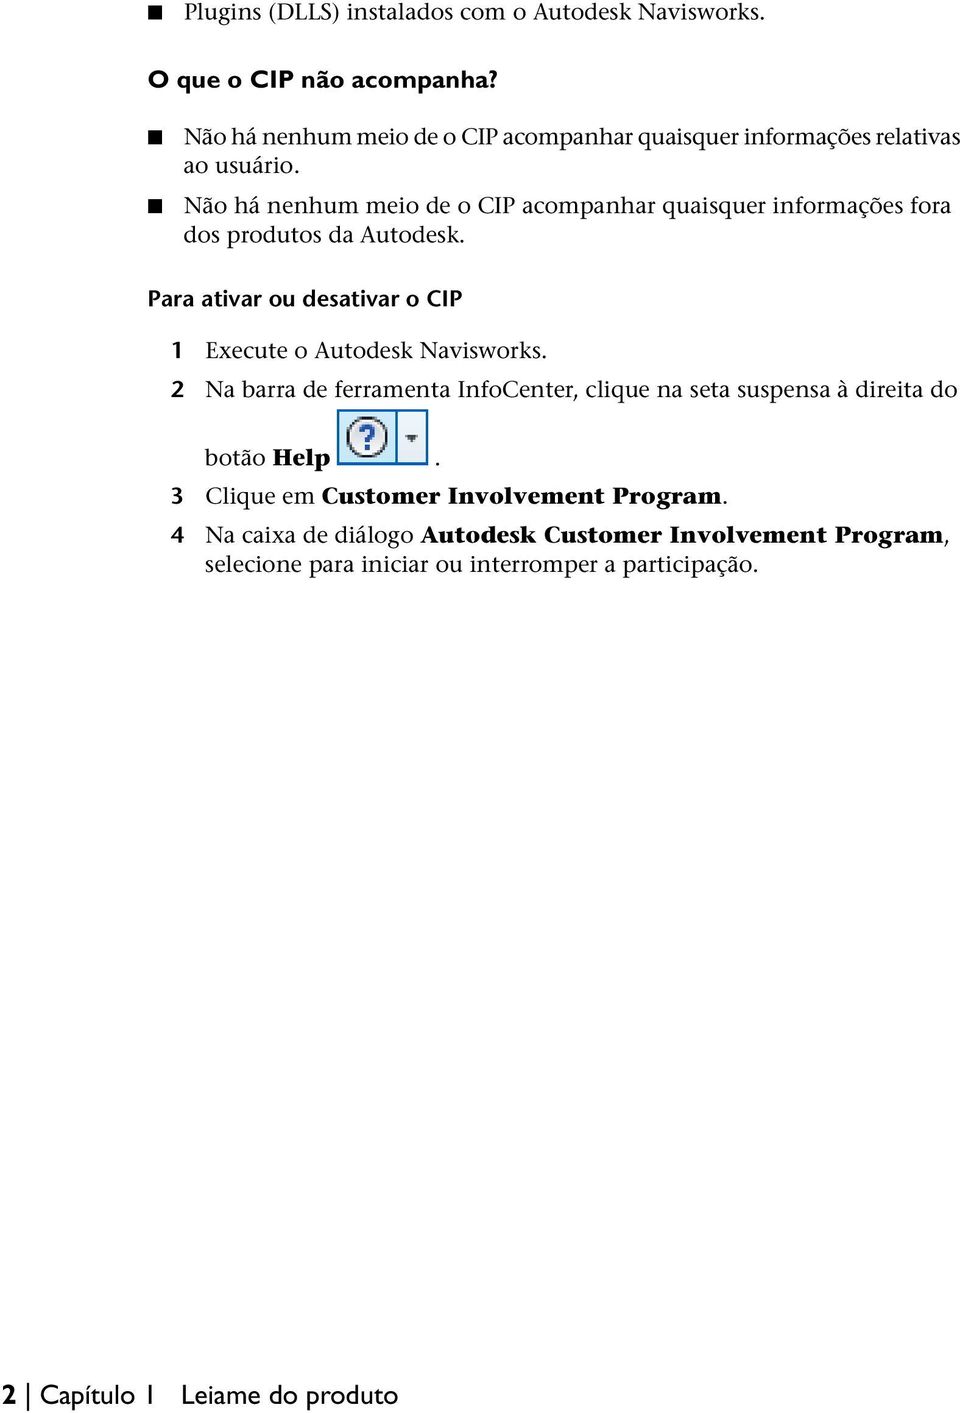 Não há nenhum meio de o CIP acompanhar quaisquer informações fora dos produtos da Autodesk.